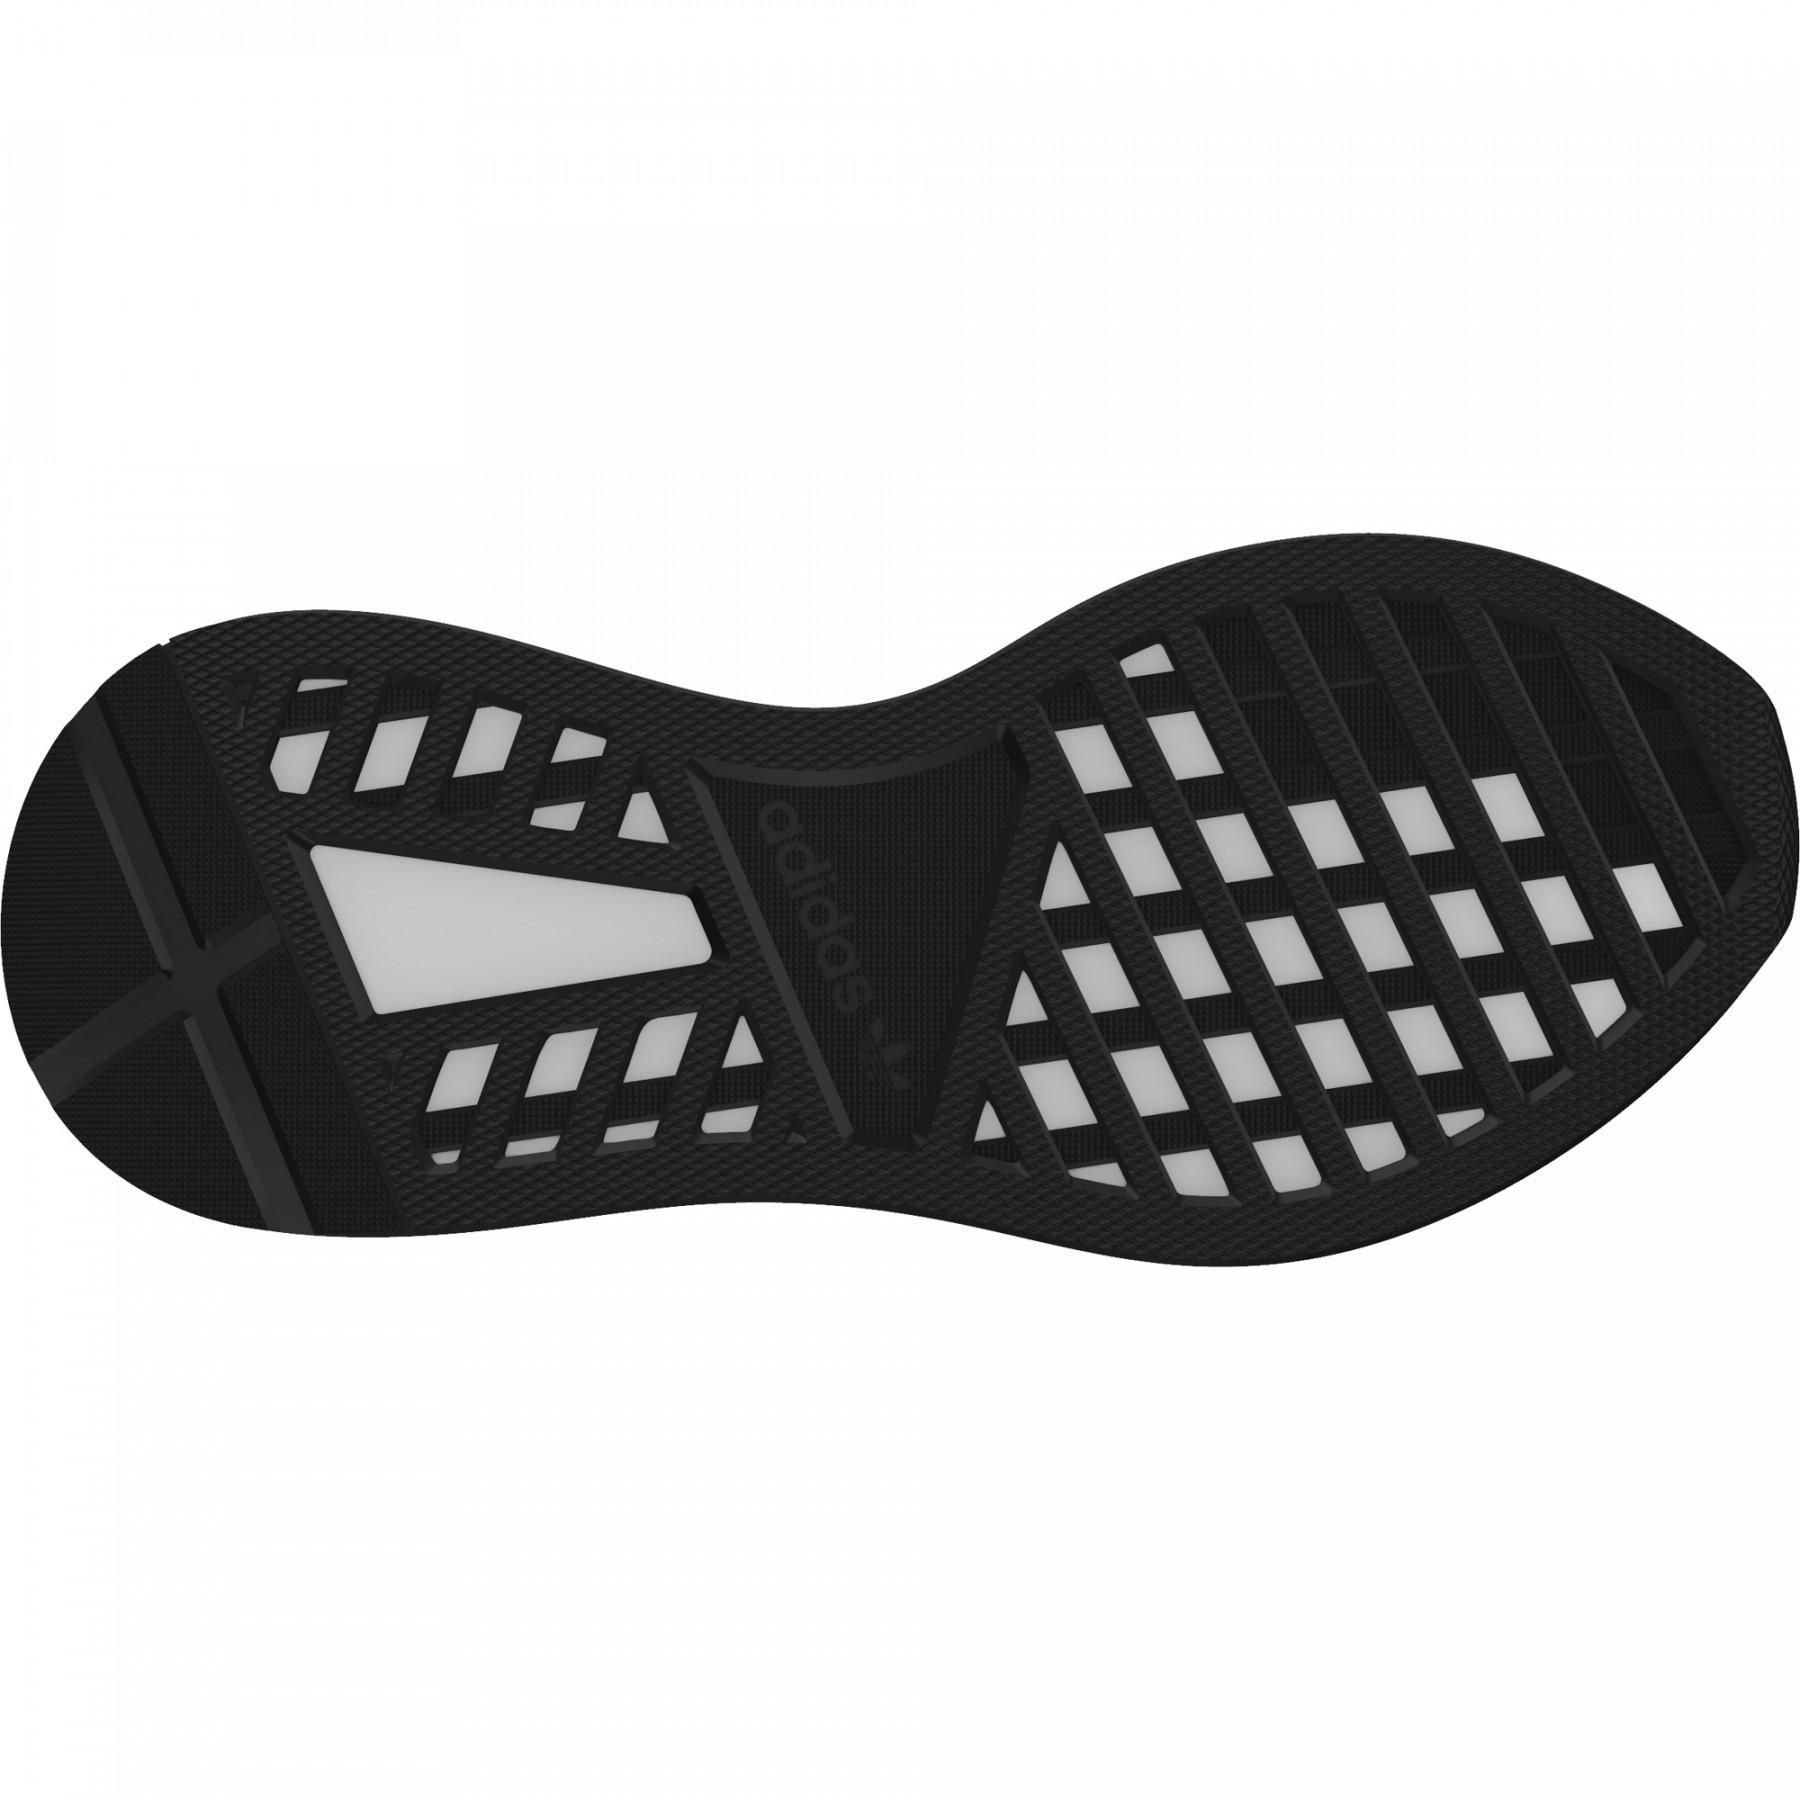 Zapatillas adidas Deerupt Runner Junior